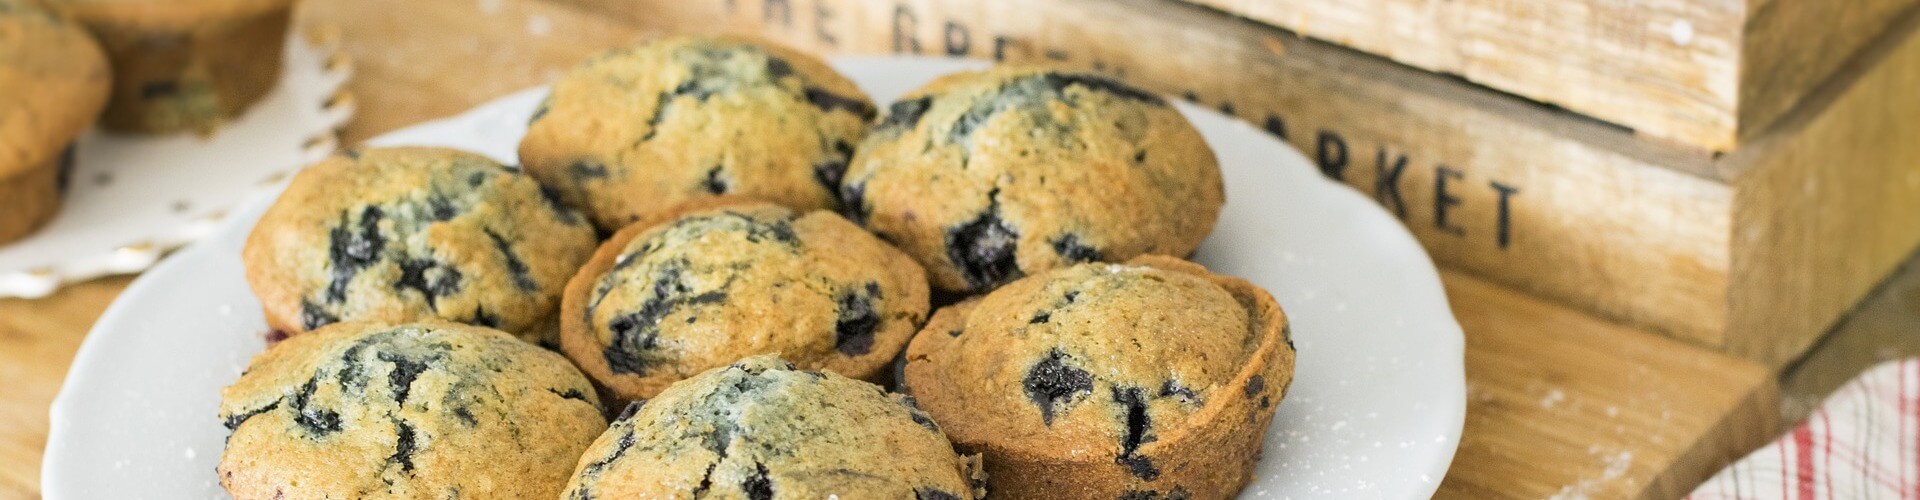 Muffini od aronije bez glutena i šećera